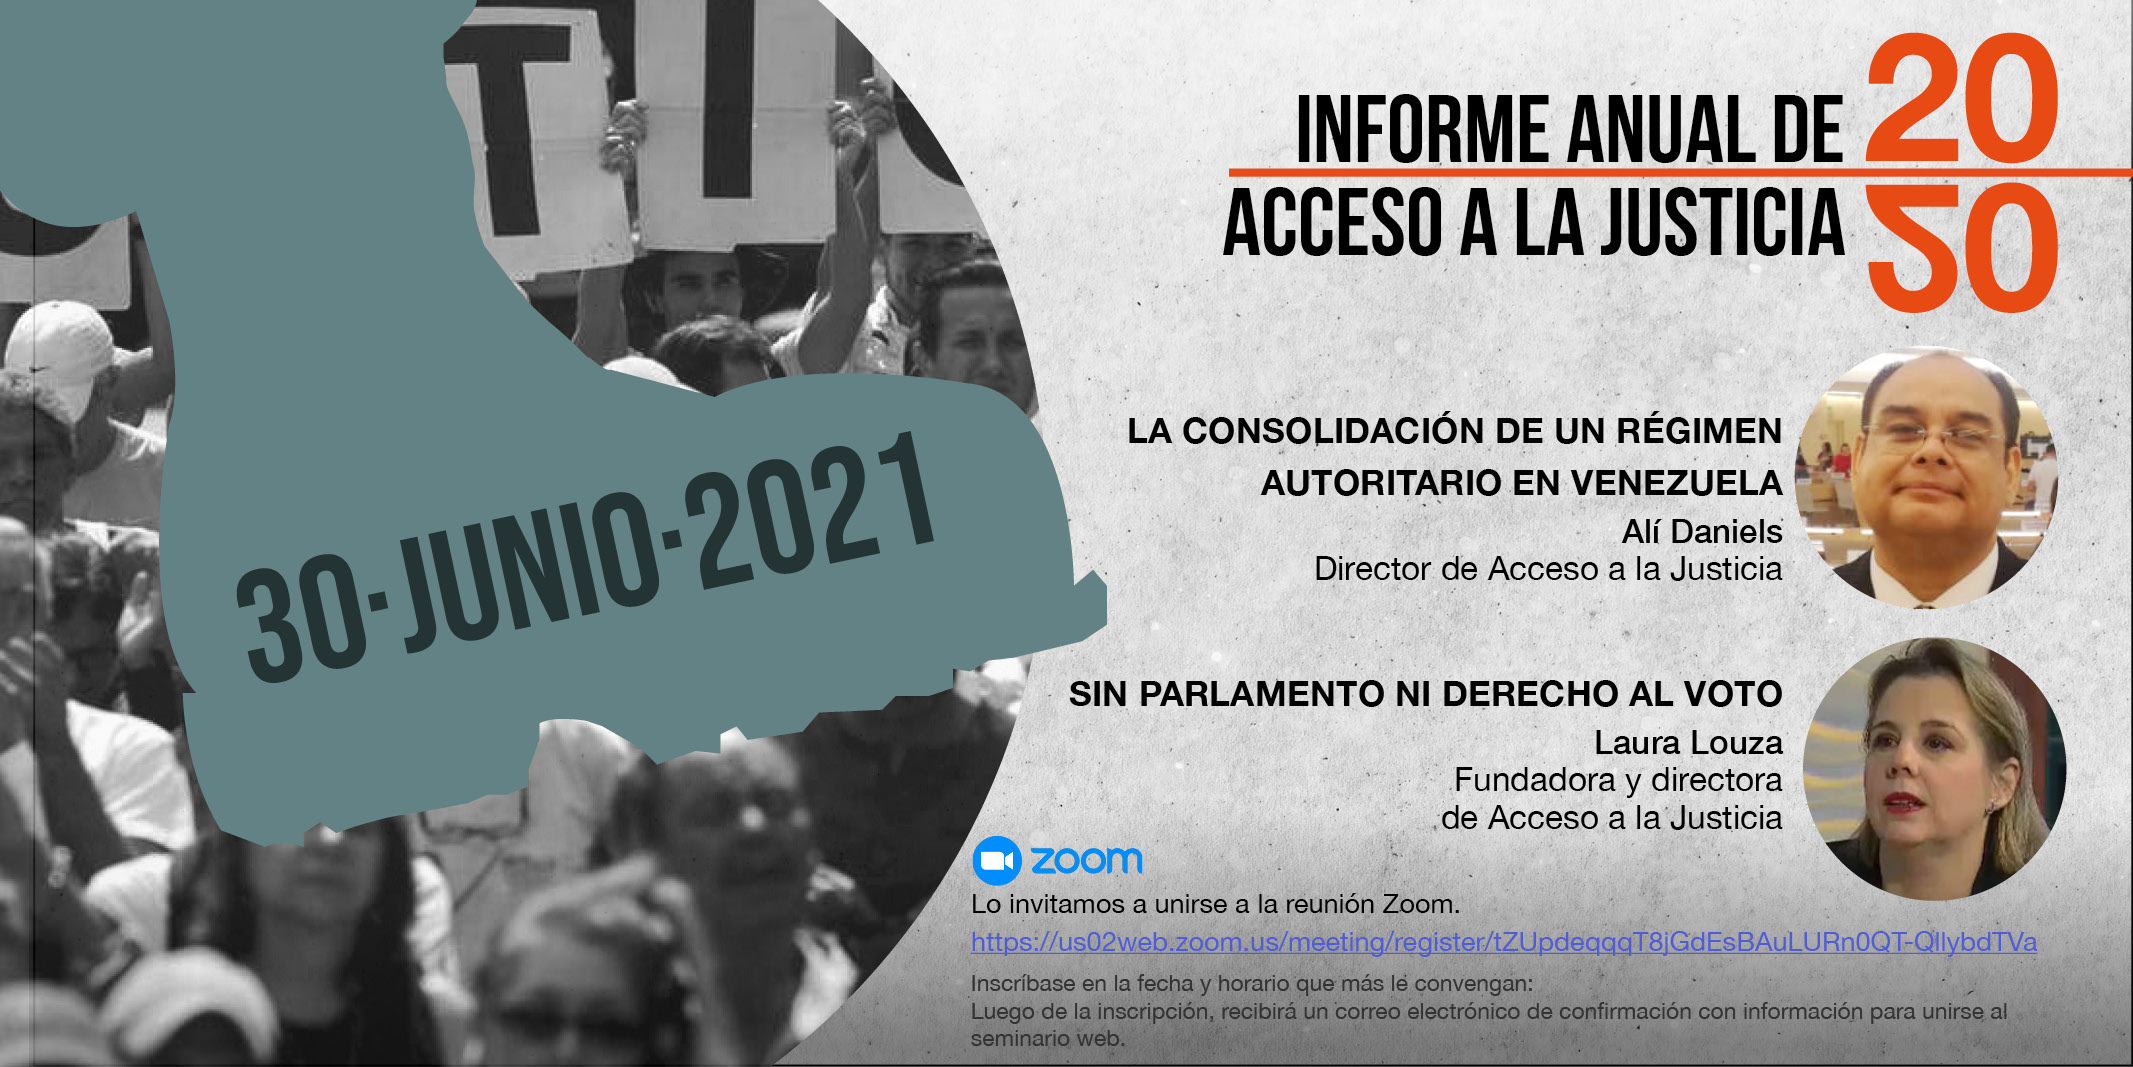 Informe anual 2020 de Acceso a la Justicia: La consolidación de un régimen autoritario en Venezuela. Sin parlamento ni derecho al voto